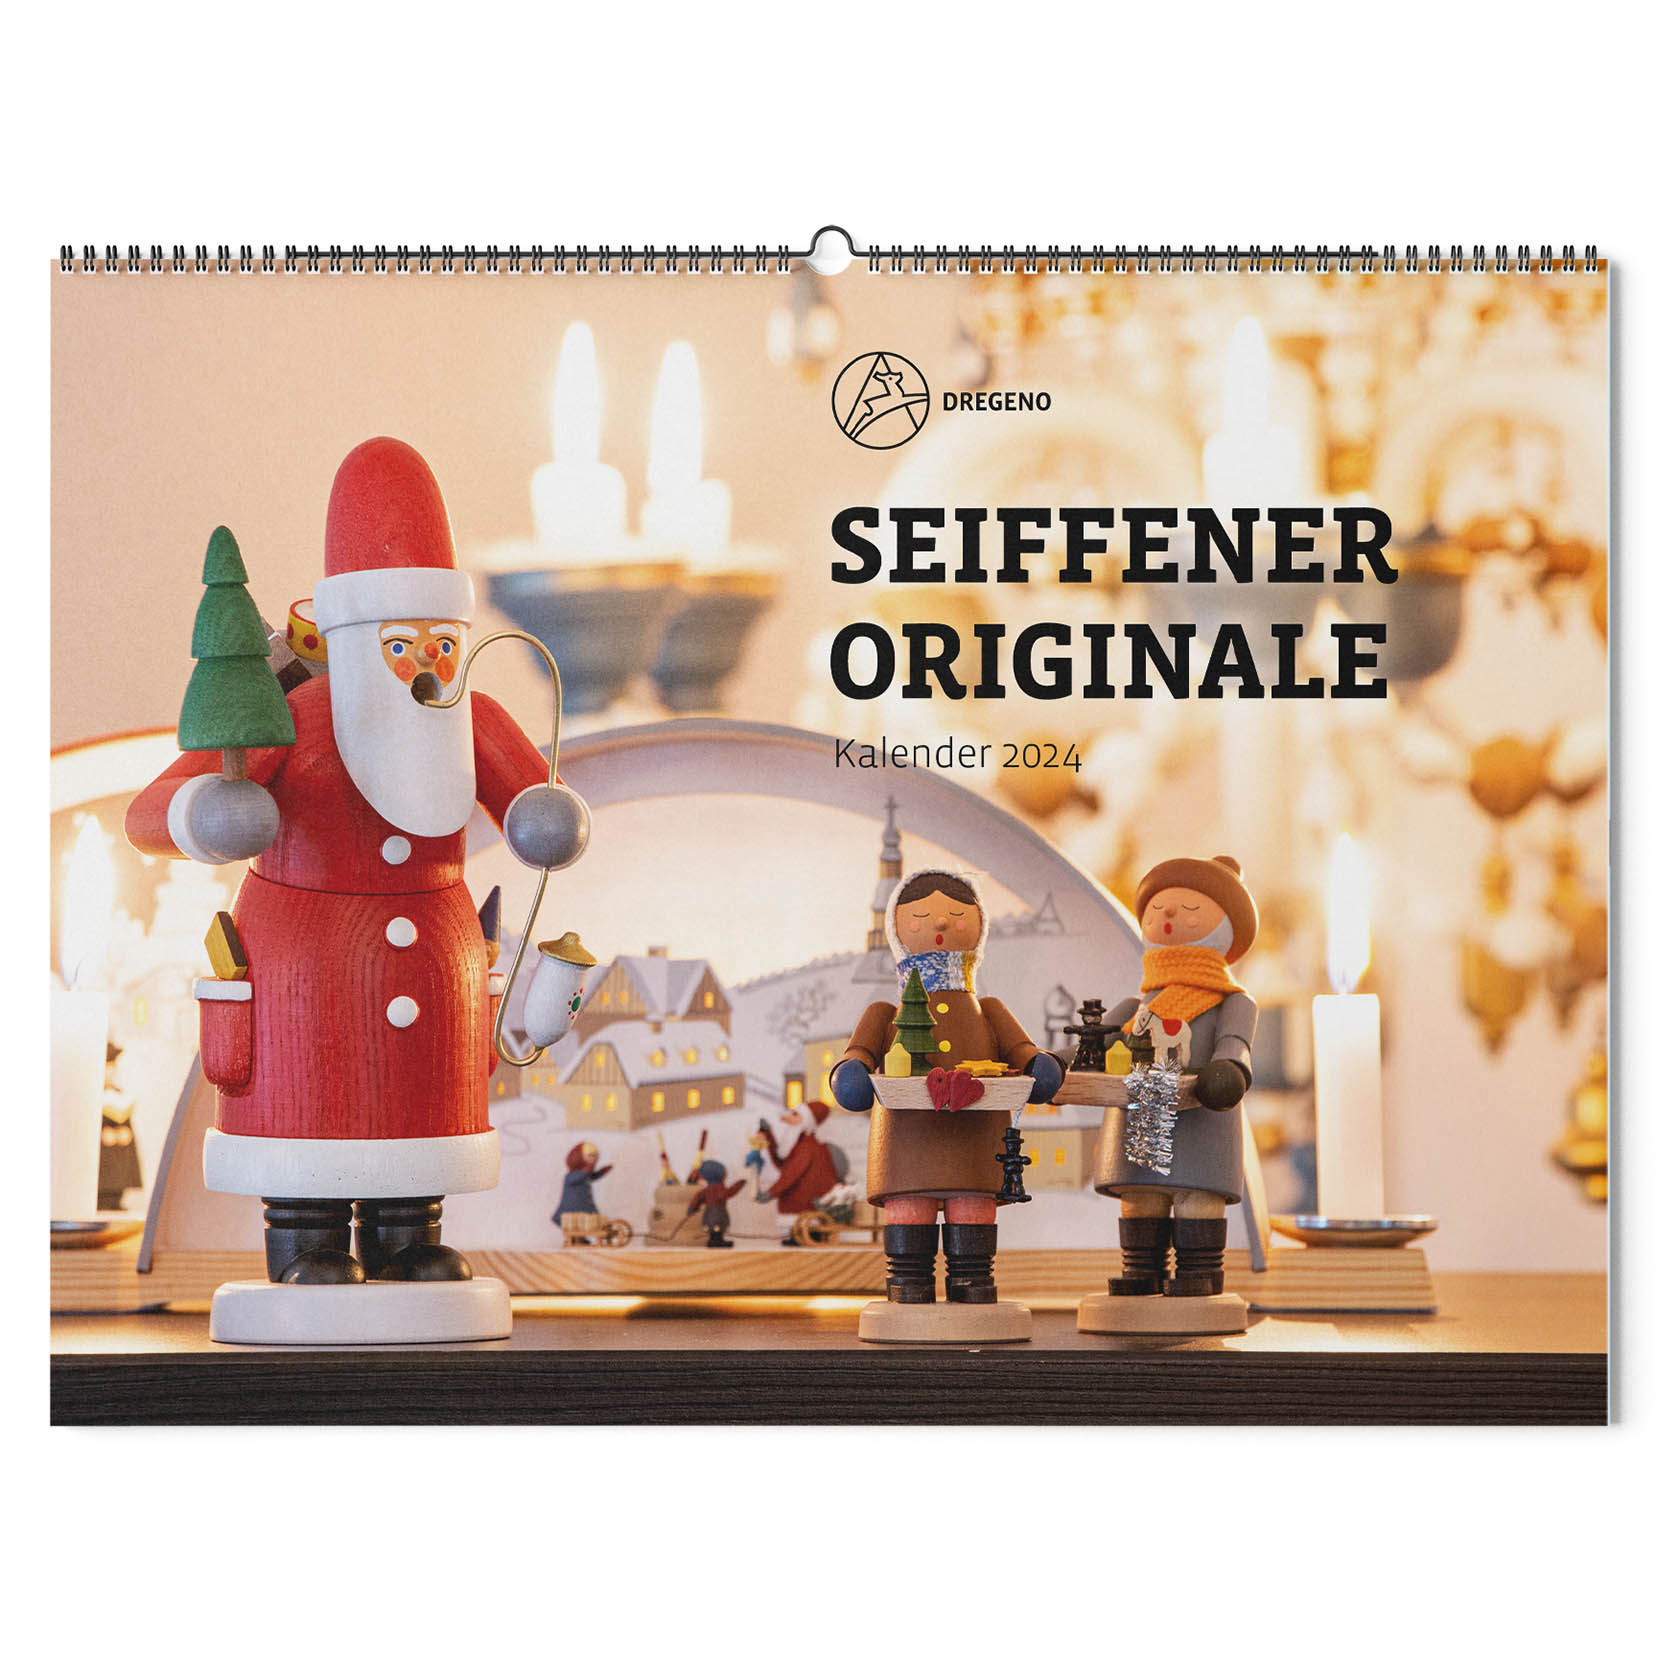 Kalender 2024 -Seiffener Originale- im Dregeno Online Shop günstig kaufen